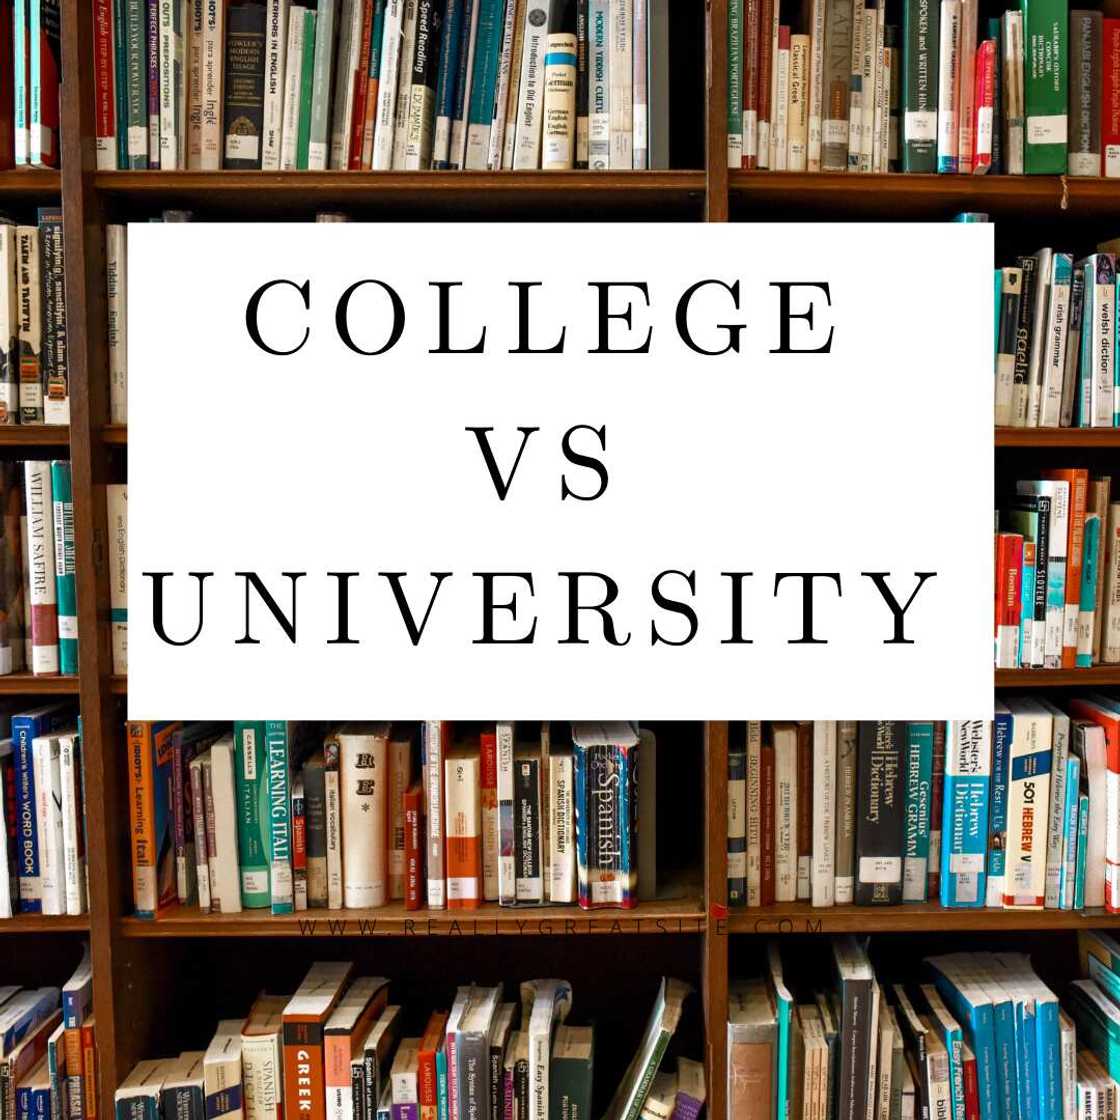 College vs university